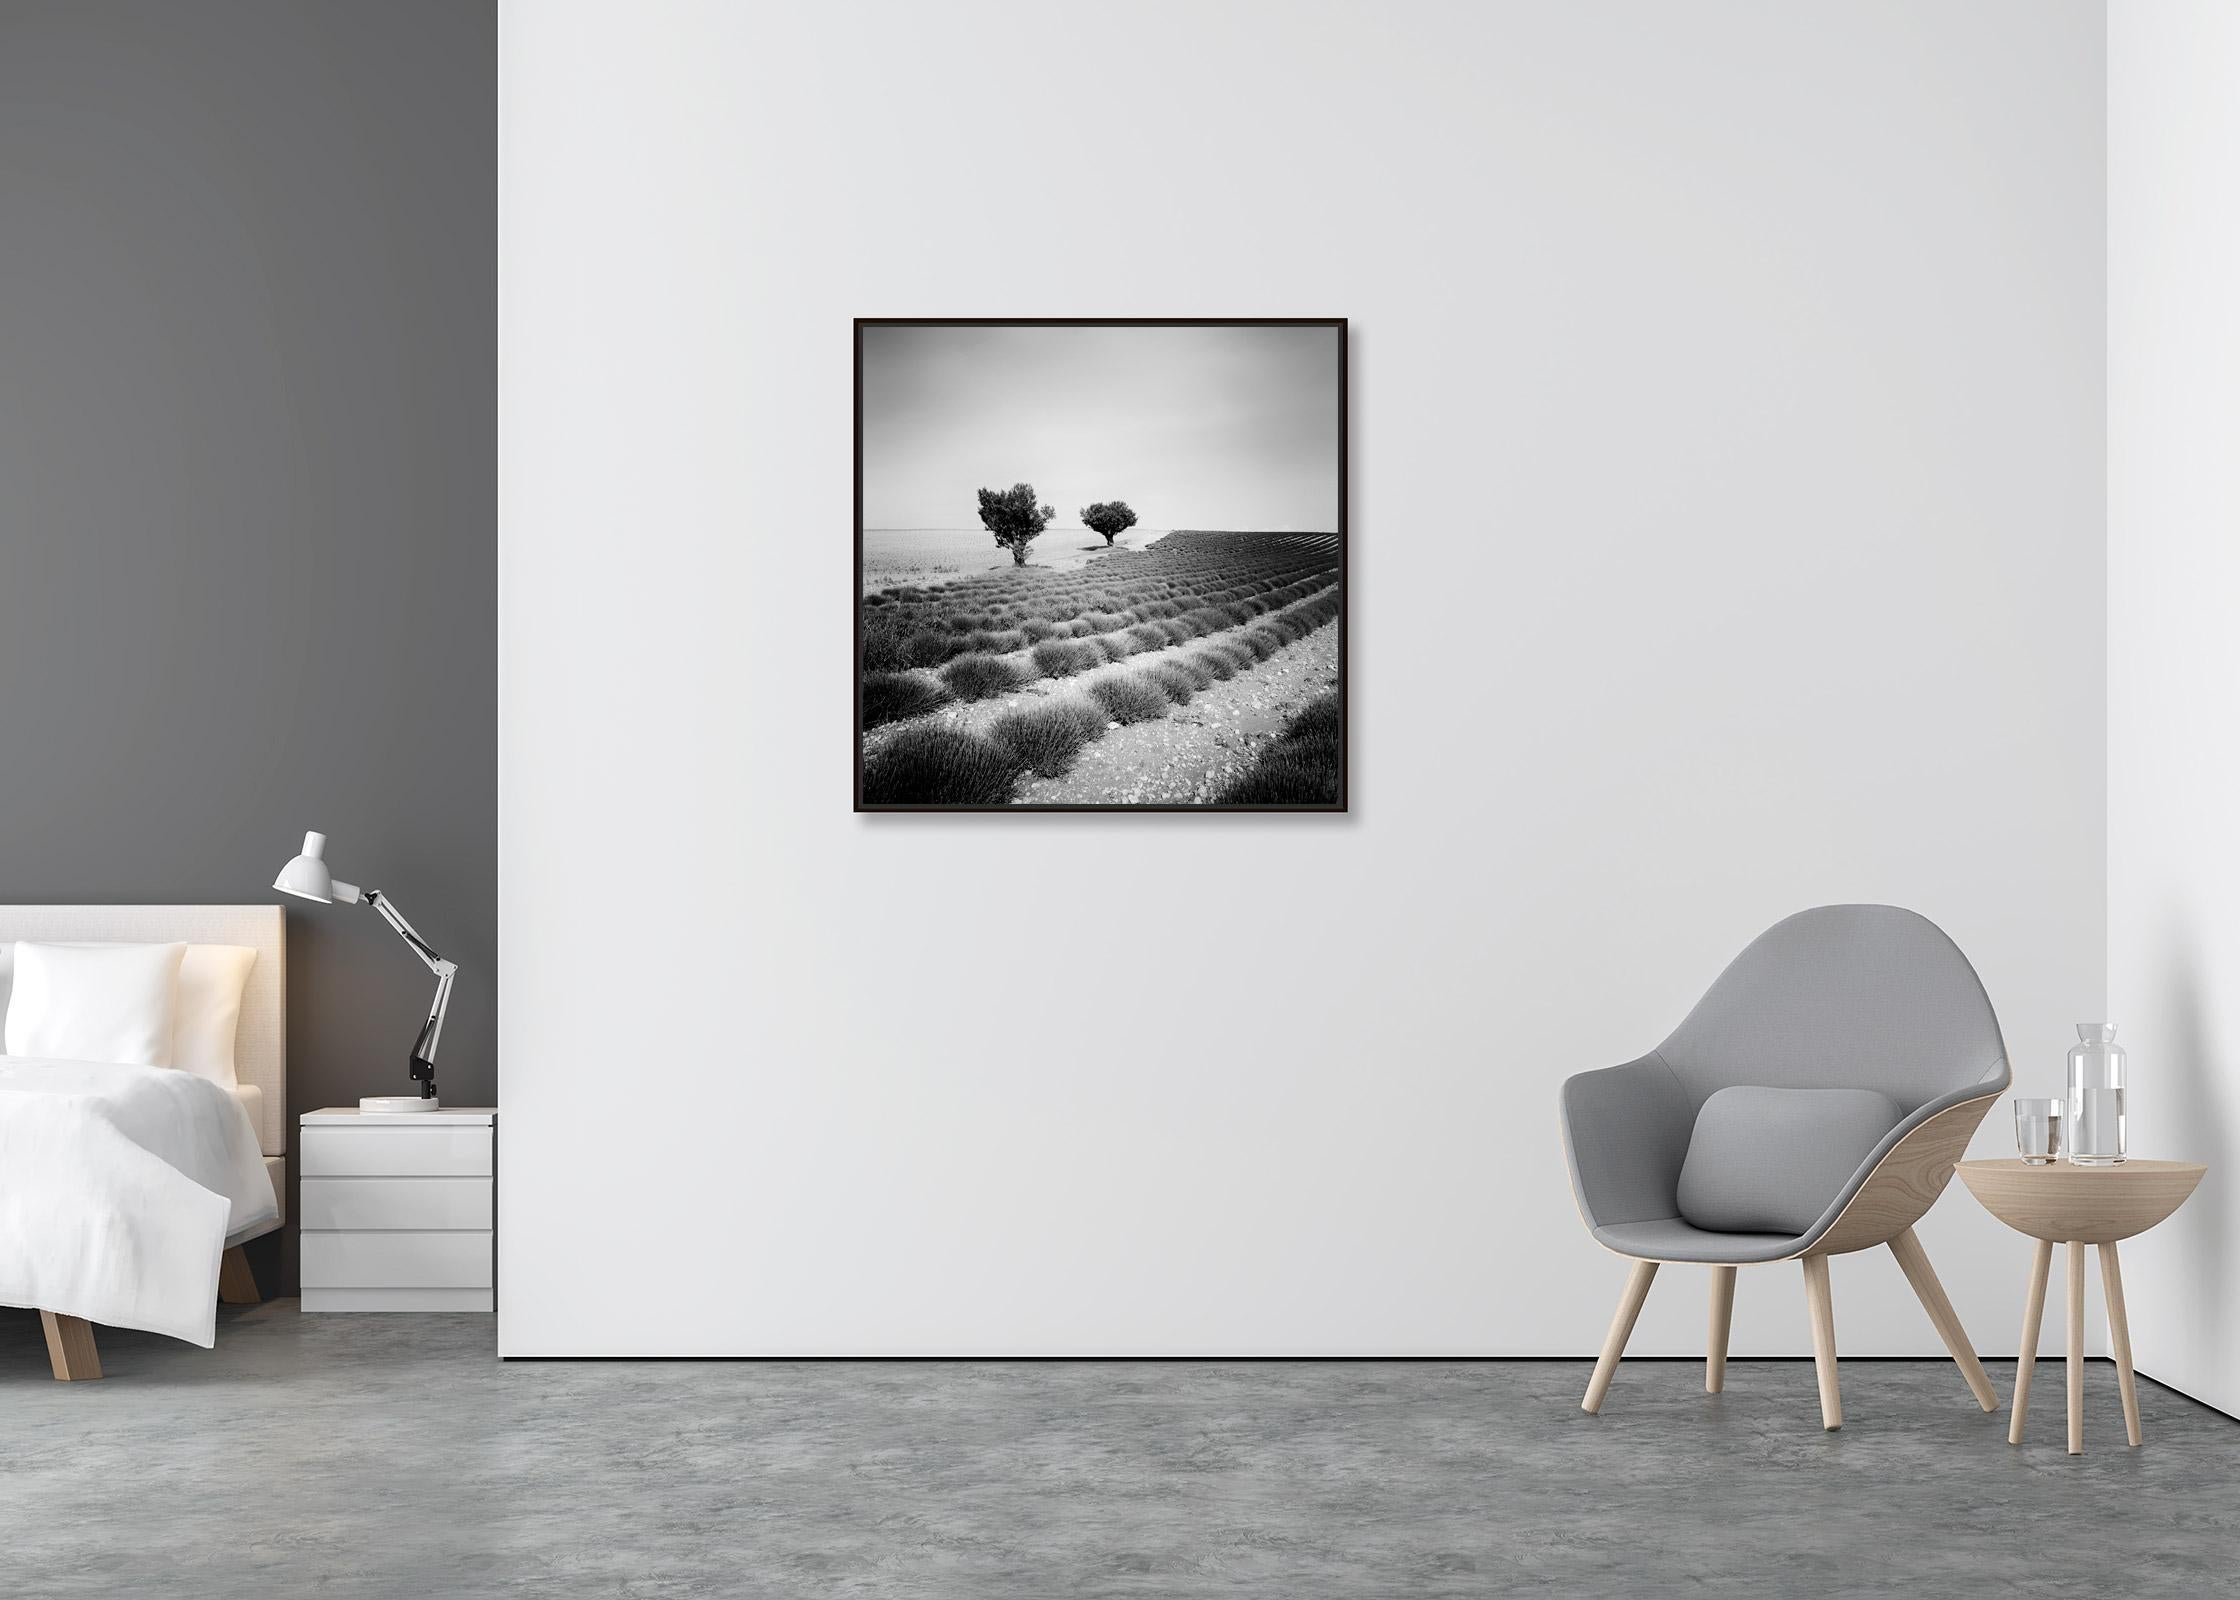 Lavendelfarbenes Feld mit Bäumen, Frankreich, minimalistische schwarz-weiße Kunstlandschaft (Zeitgenössisch), Photograph, von Gerald Berghammer, Ina Forstinger